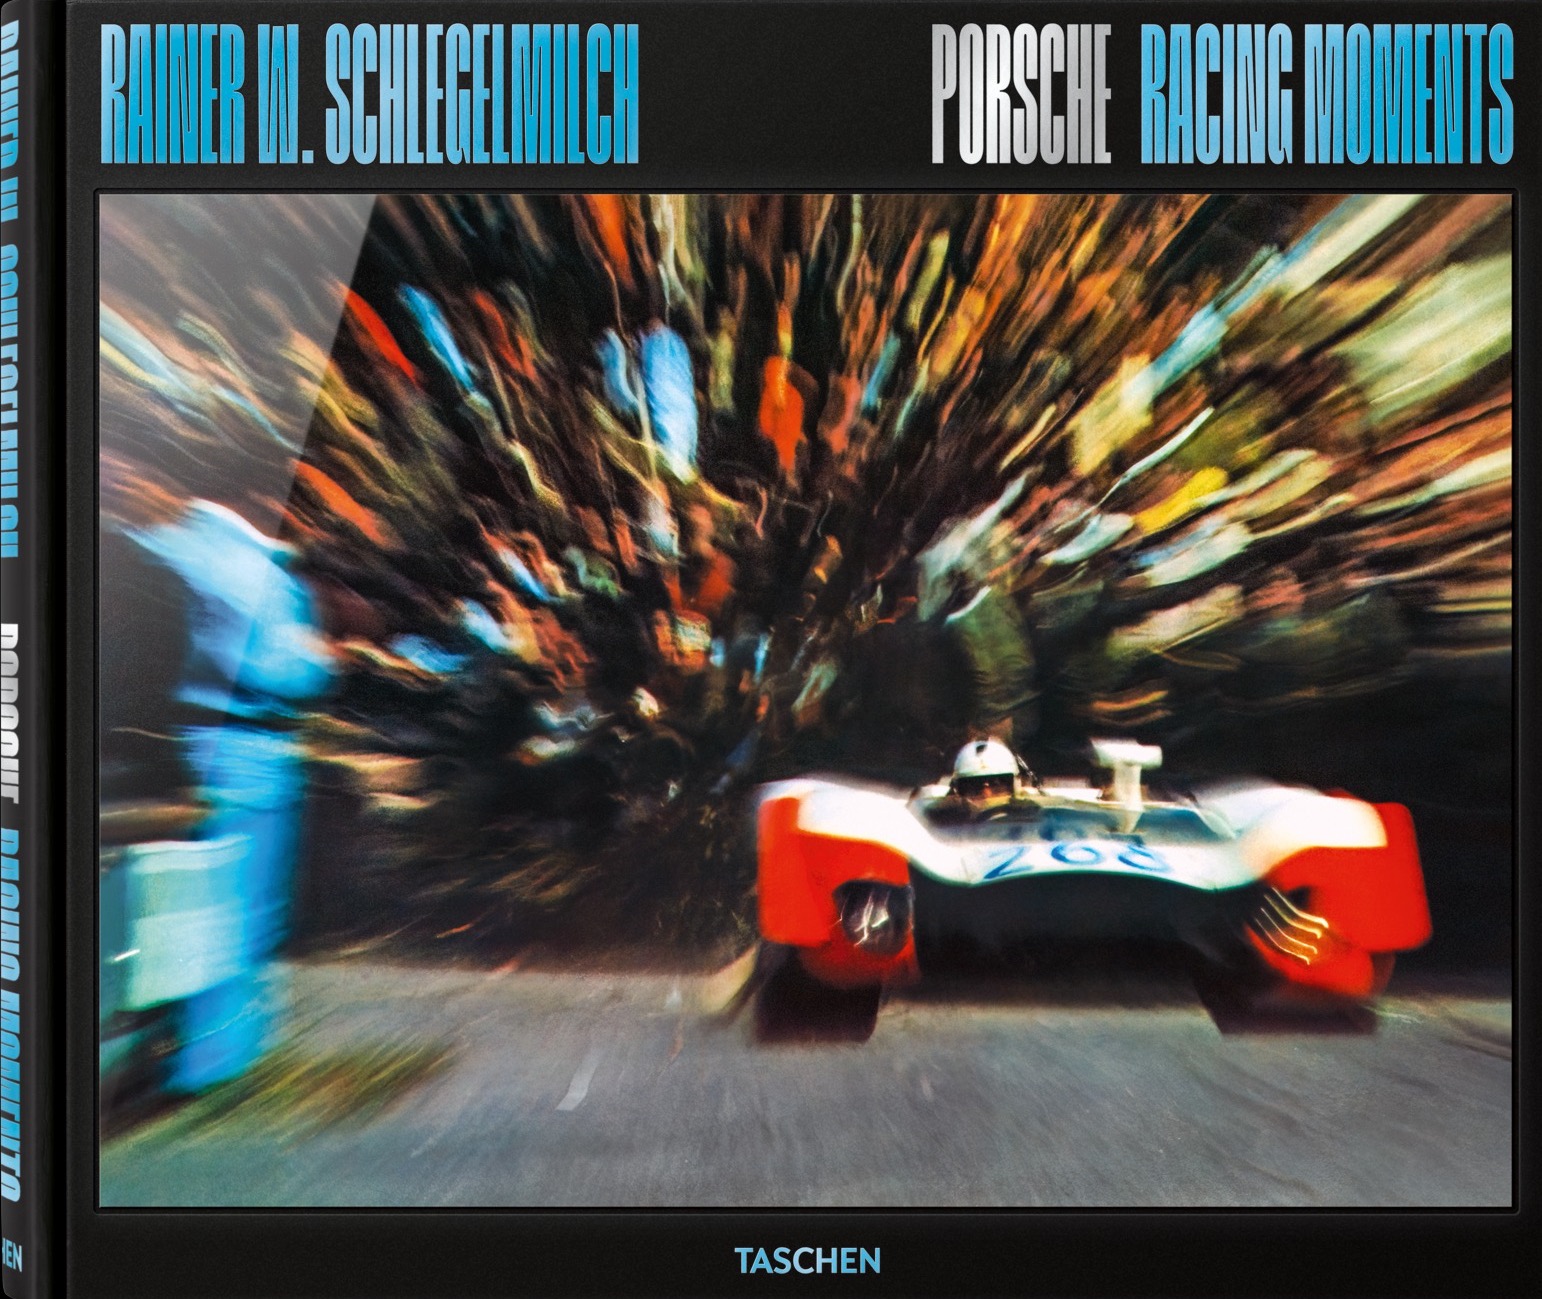 Rainer W. Schlegelmilch. Porsche Racing Moments